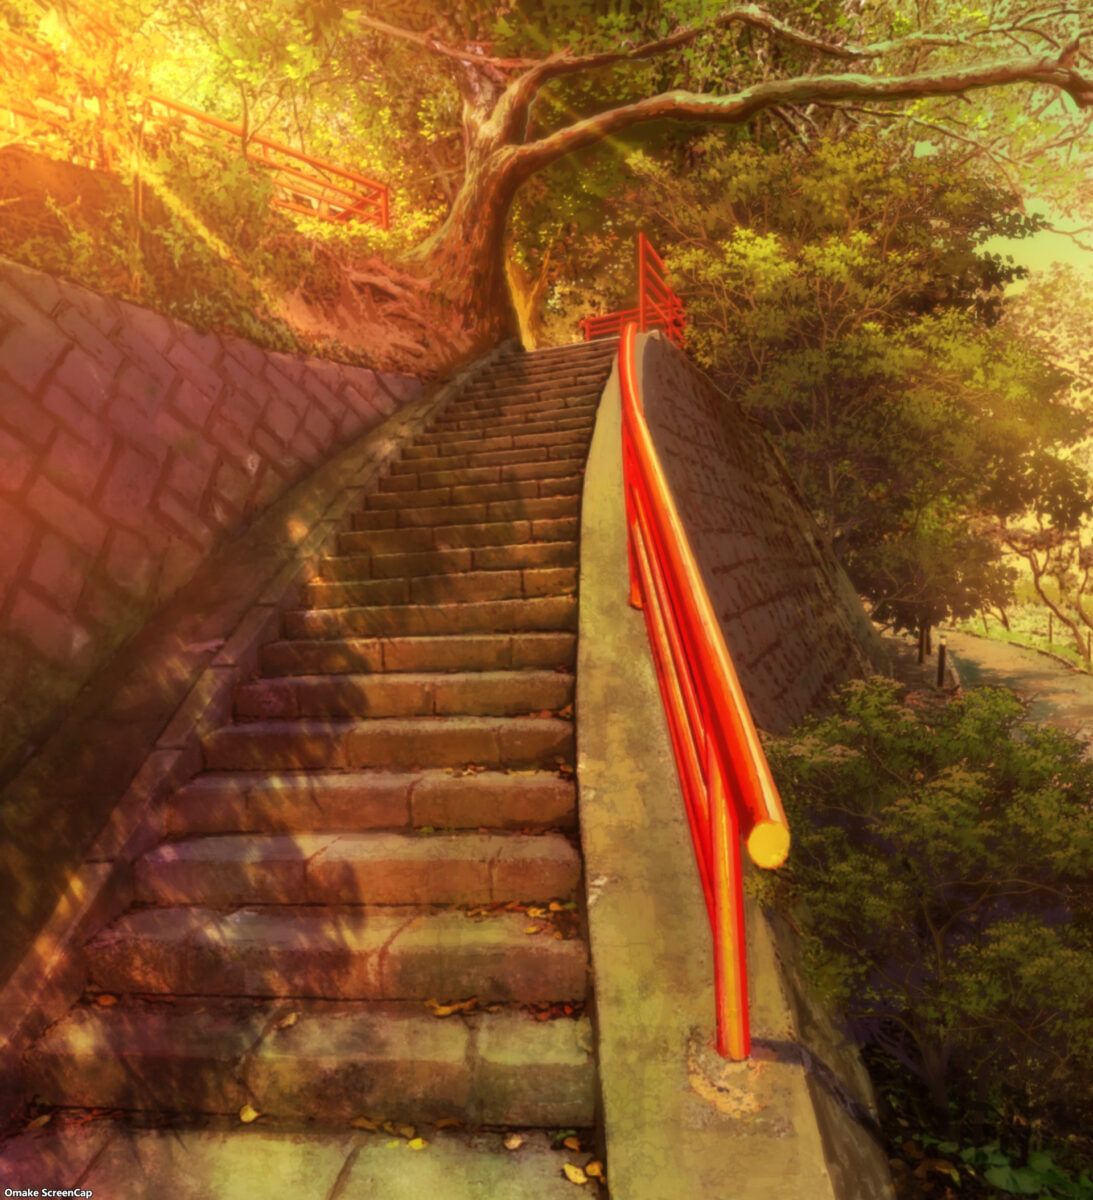 Goddess Cafe Terrace Episode 2 Dangerous Shrine Stairs